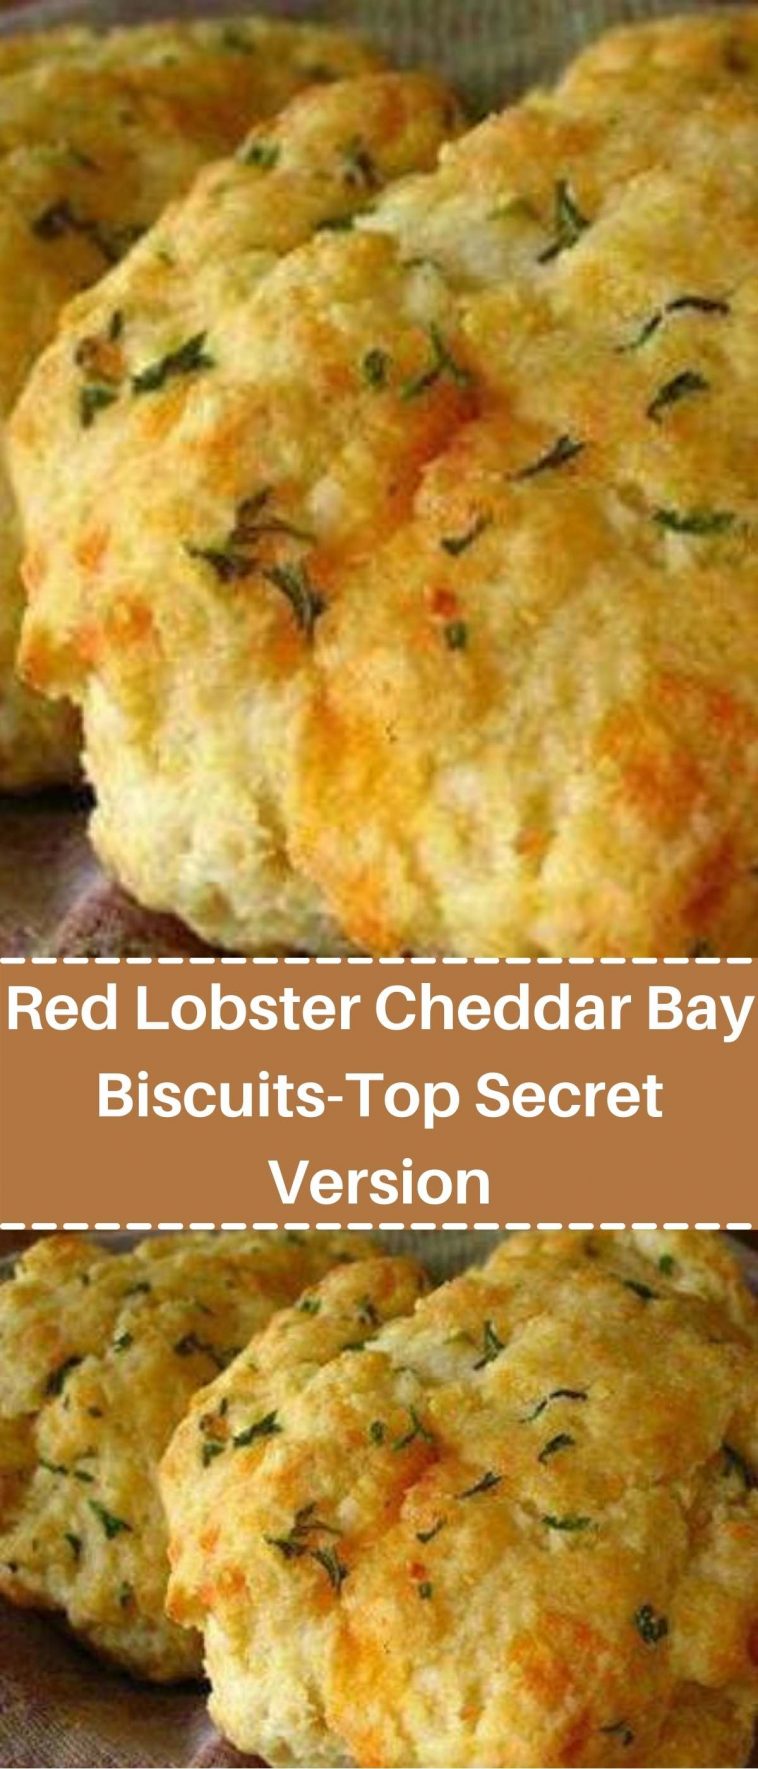 Red Lobster Cheddar Bay Biscuits-Top Secret Version